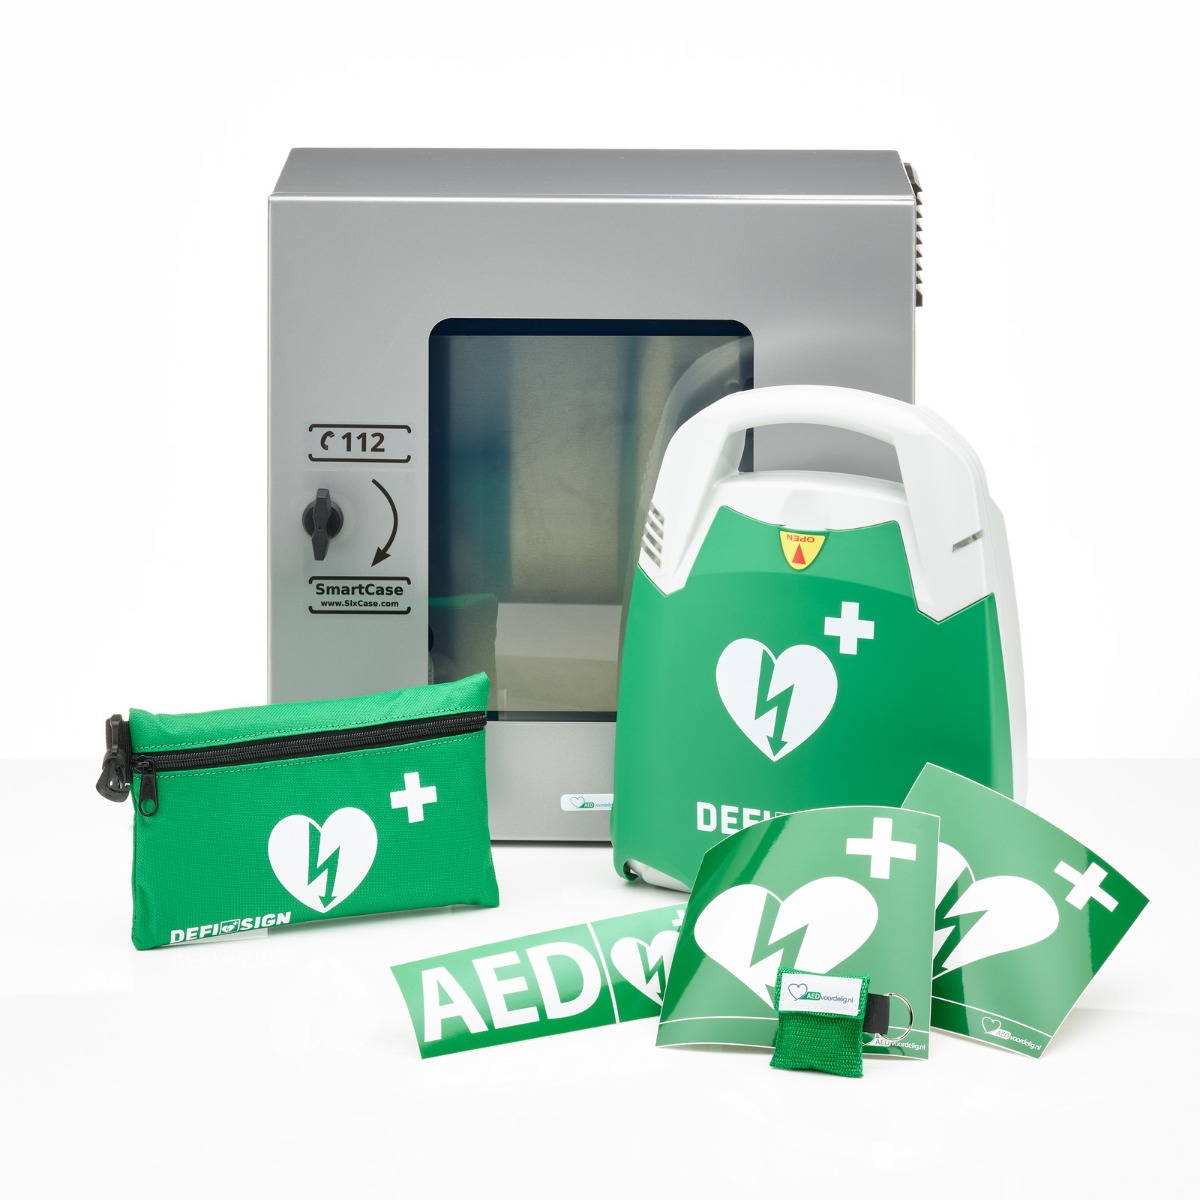 DefiSign LIFE AED + buitenkast-Grijs-Volautomaat